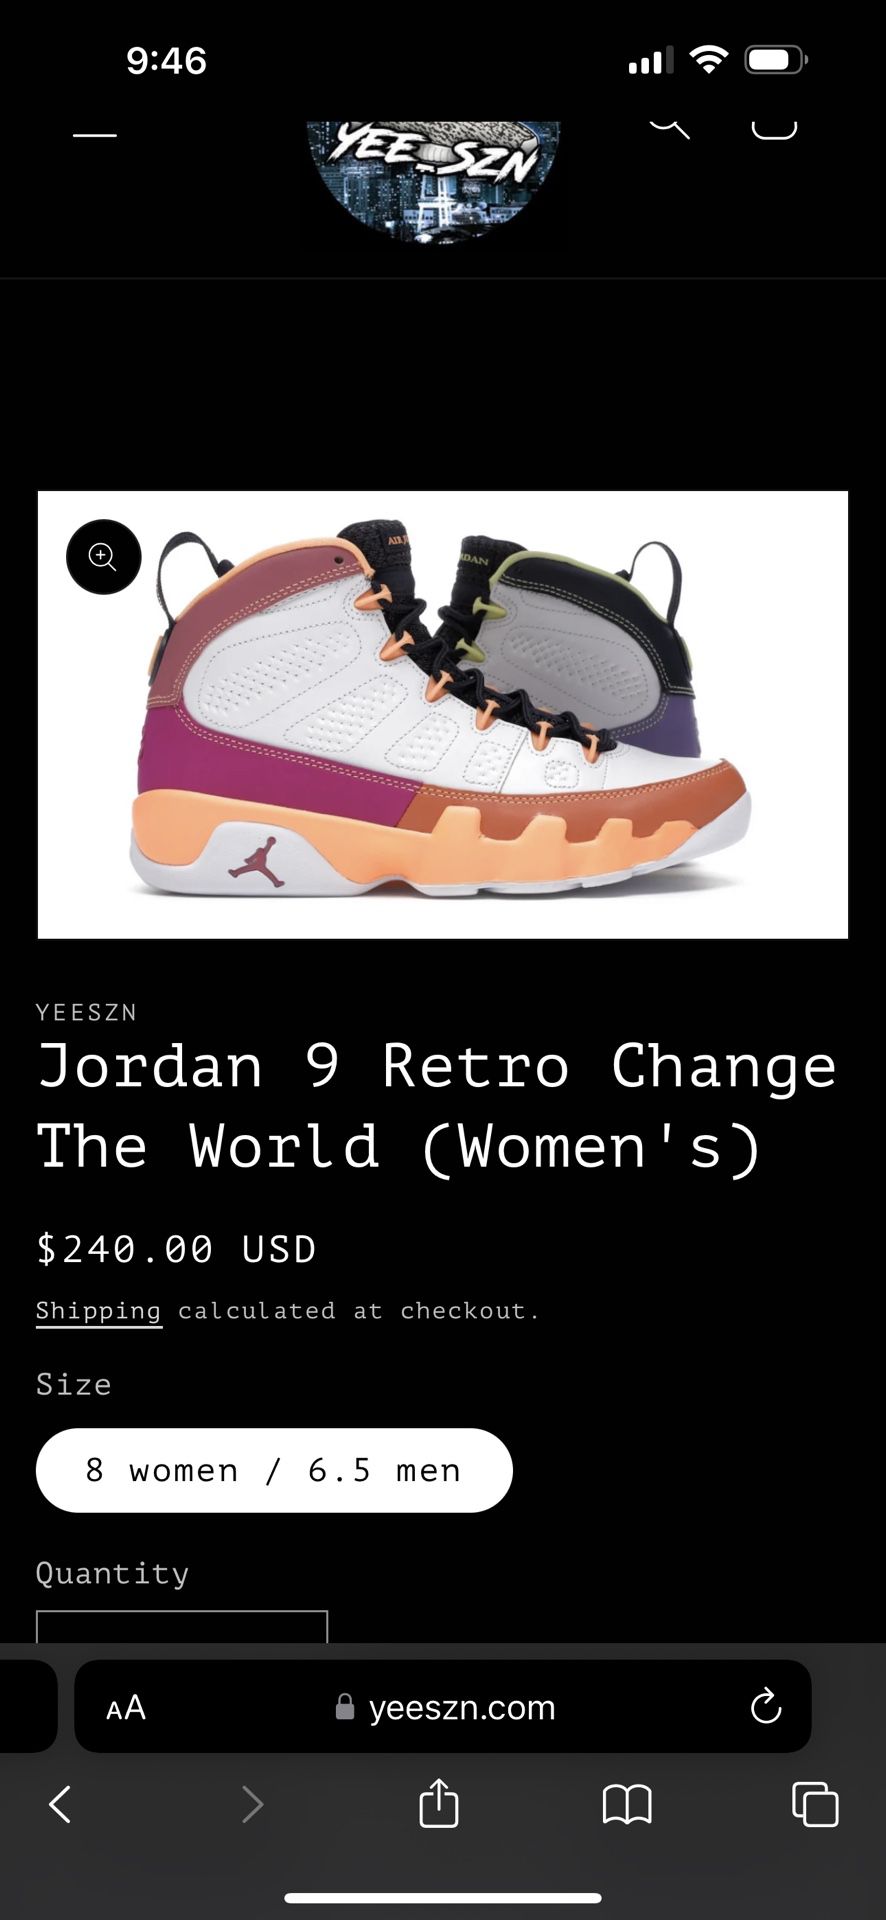 Nike Air Jordan 9 Retro 8W / 6.5 Men Brand New